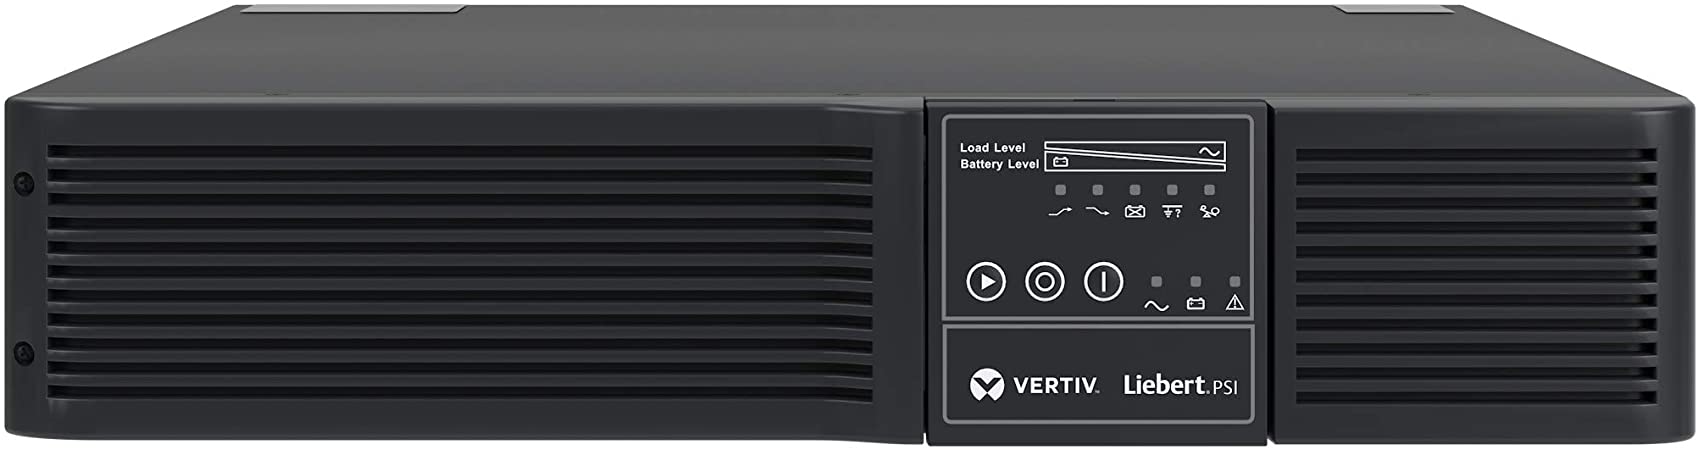 Vertiv Liebert PSI 1500VA Power Backup Reviews